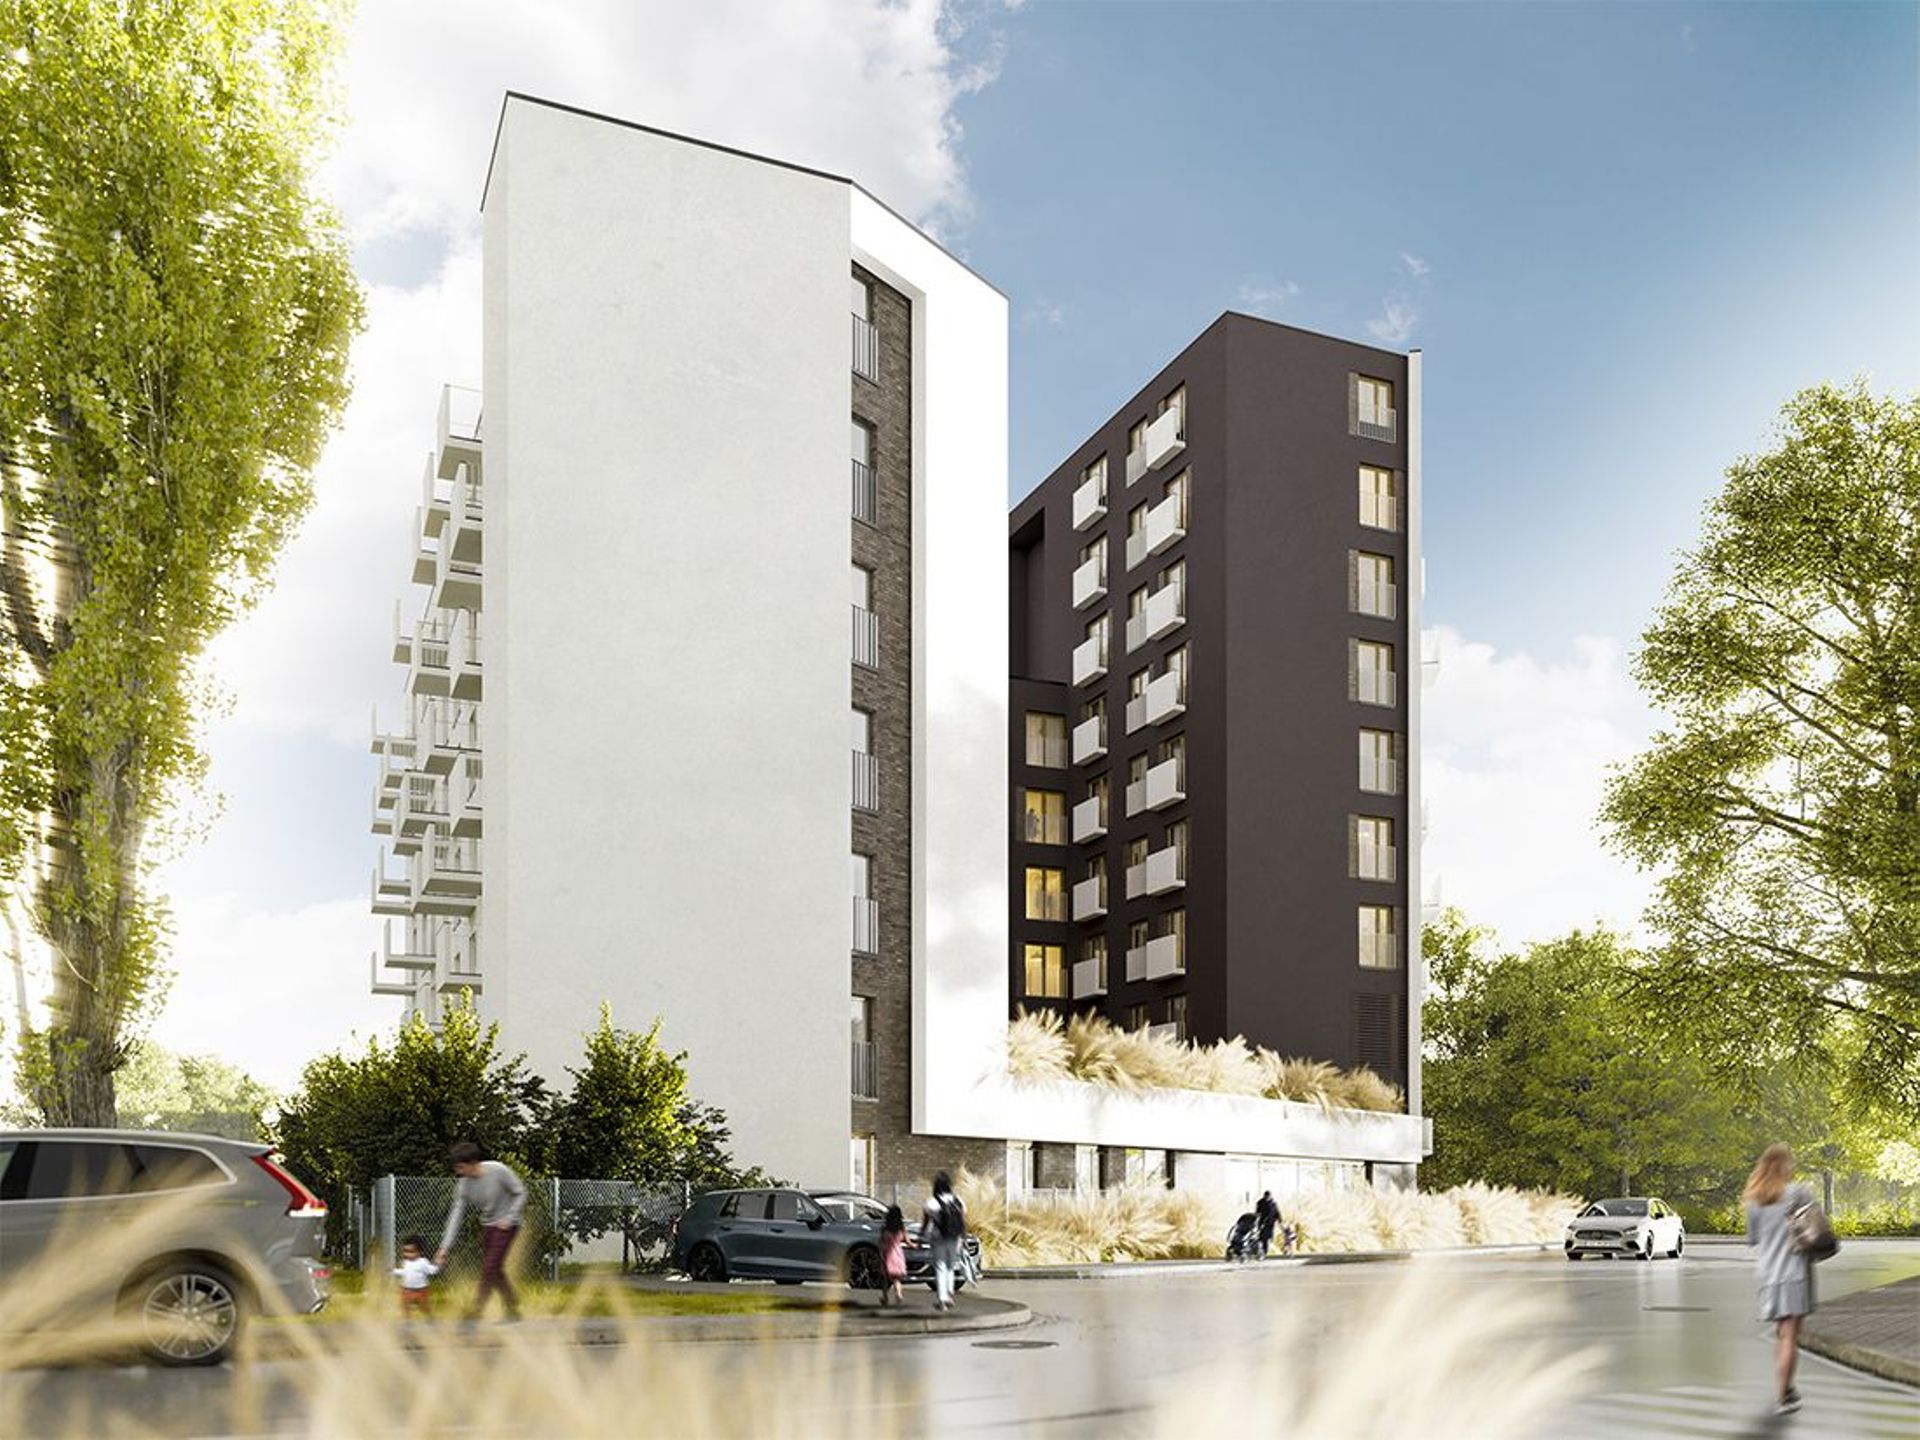 Sprzedaż apartamentów w budynku Bliska Residence w Warszawie na starcie